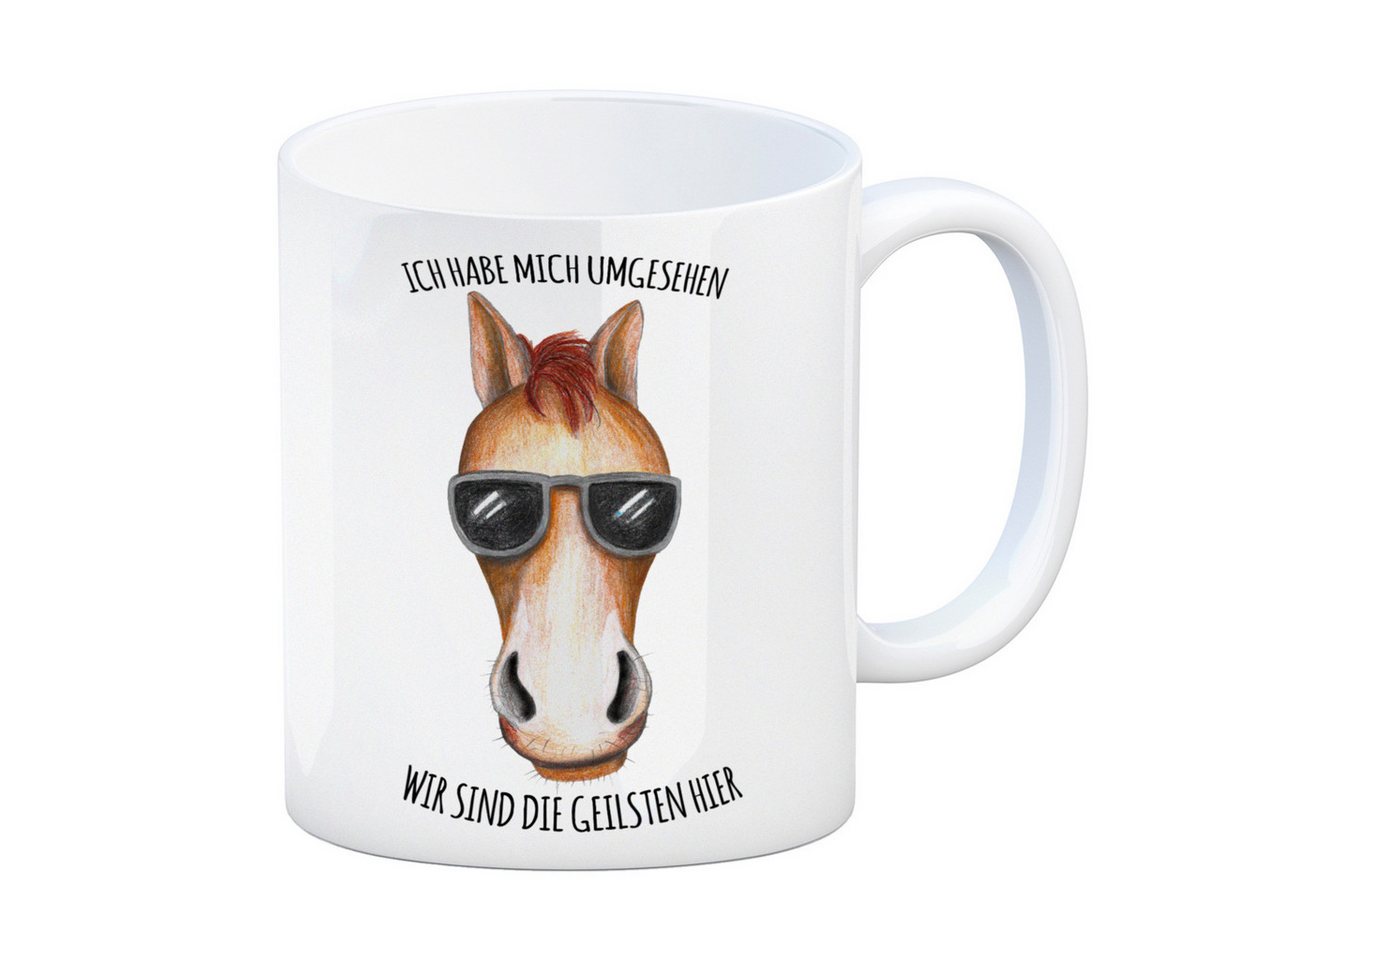 speecheese Tasse Kaffeebecher mit Pferd Sonnenbrille Motiv und Spruch: Ich habe mich von speecheese